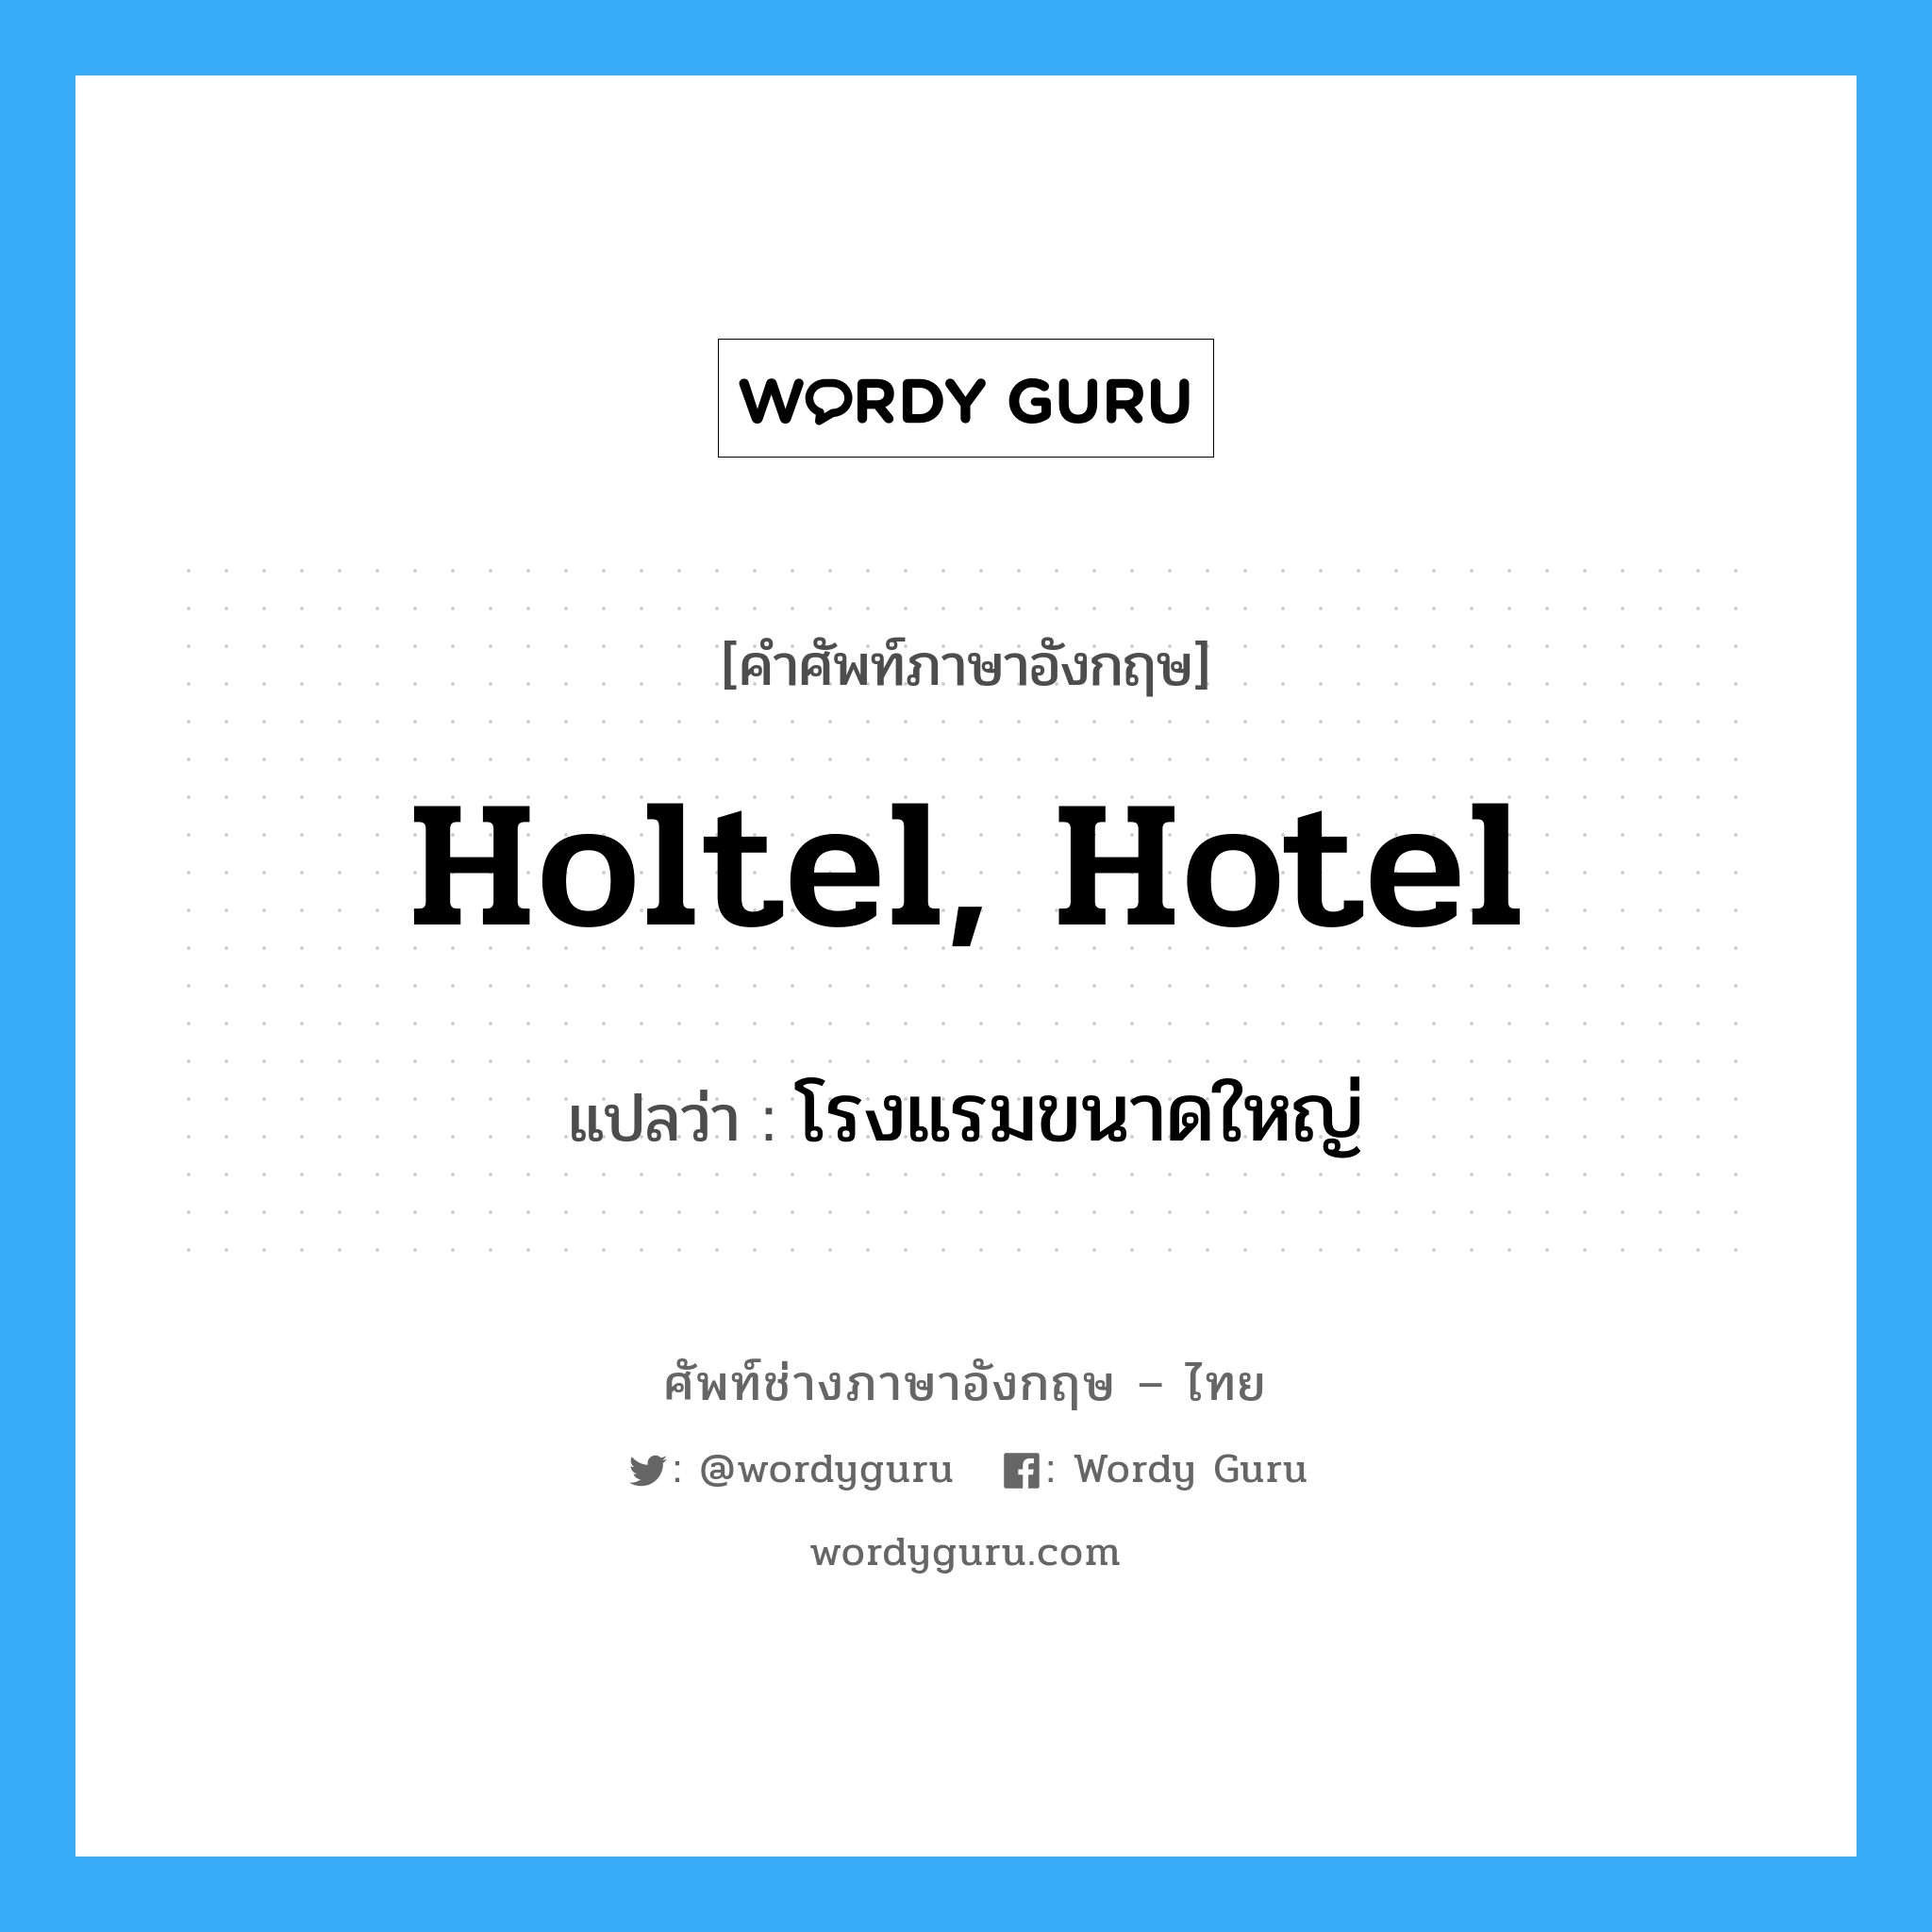 holtel, hotel แปลว่า?, คำศัพท์ช่างภาษาอังกฤษ - ไทย holtel, hotel คำศัพท์ภาษาอังกฤษ holtel, hotel แปลว่า โรงแรมขนาดใหญ่